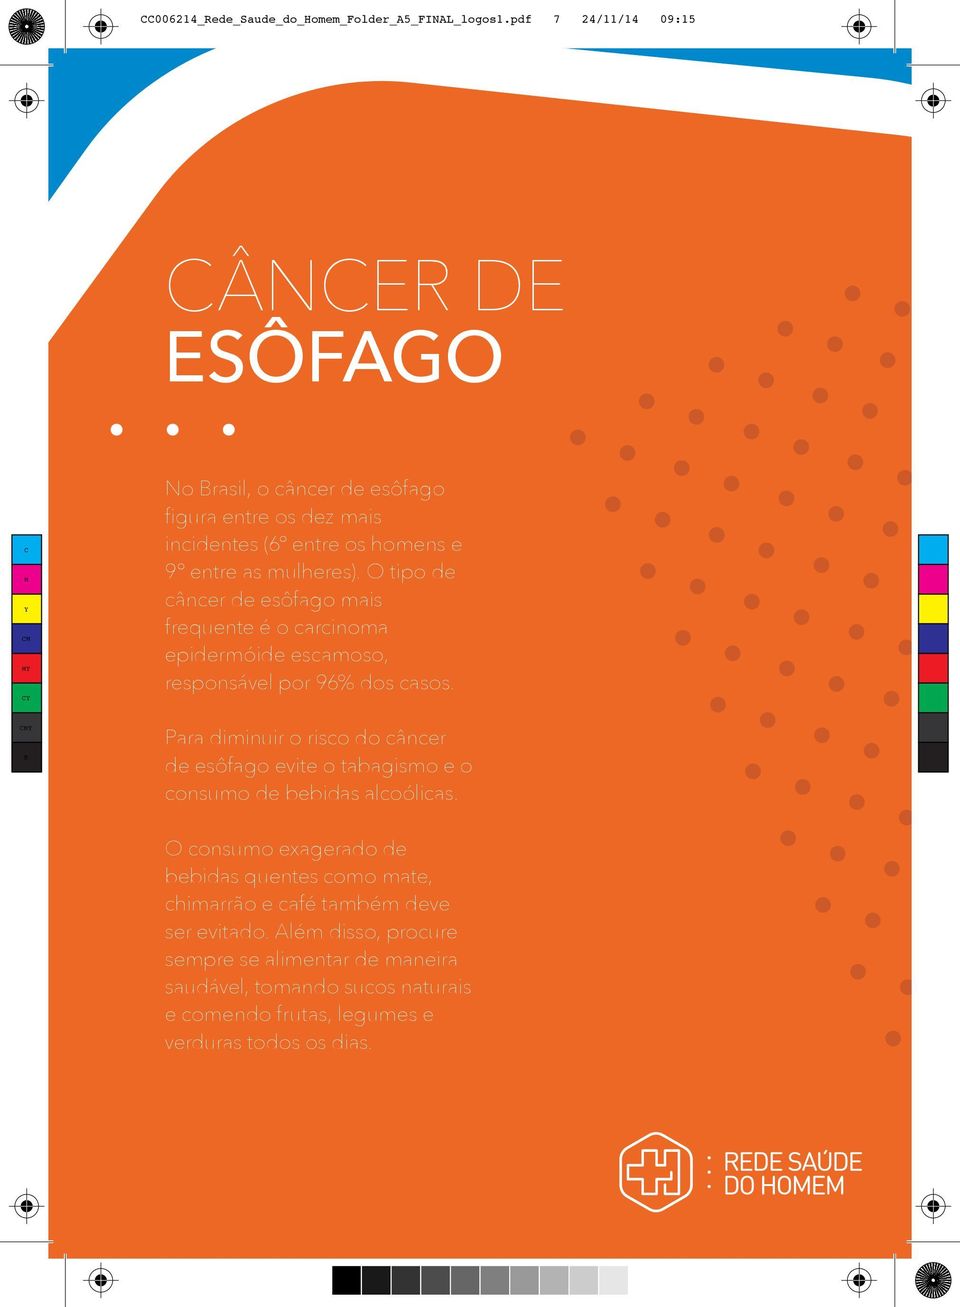 O tipo de câncer de esôfago mais frequente é o carcinoma epidermóide escamoso, responsável por 96% dos casos.